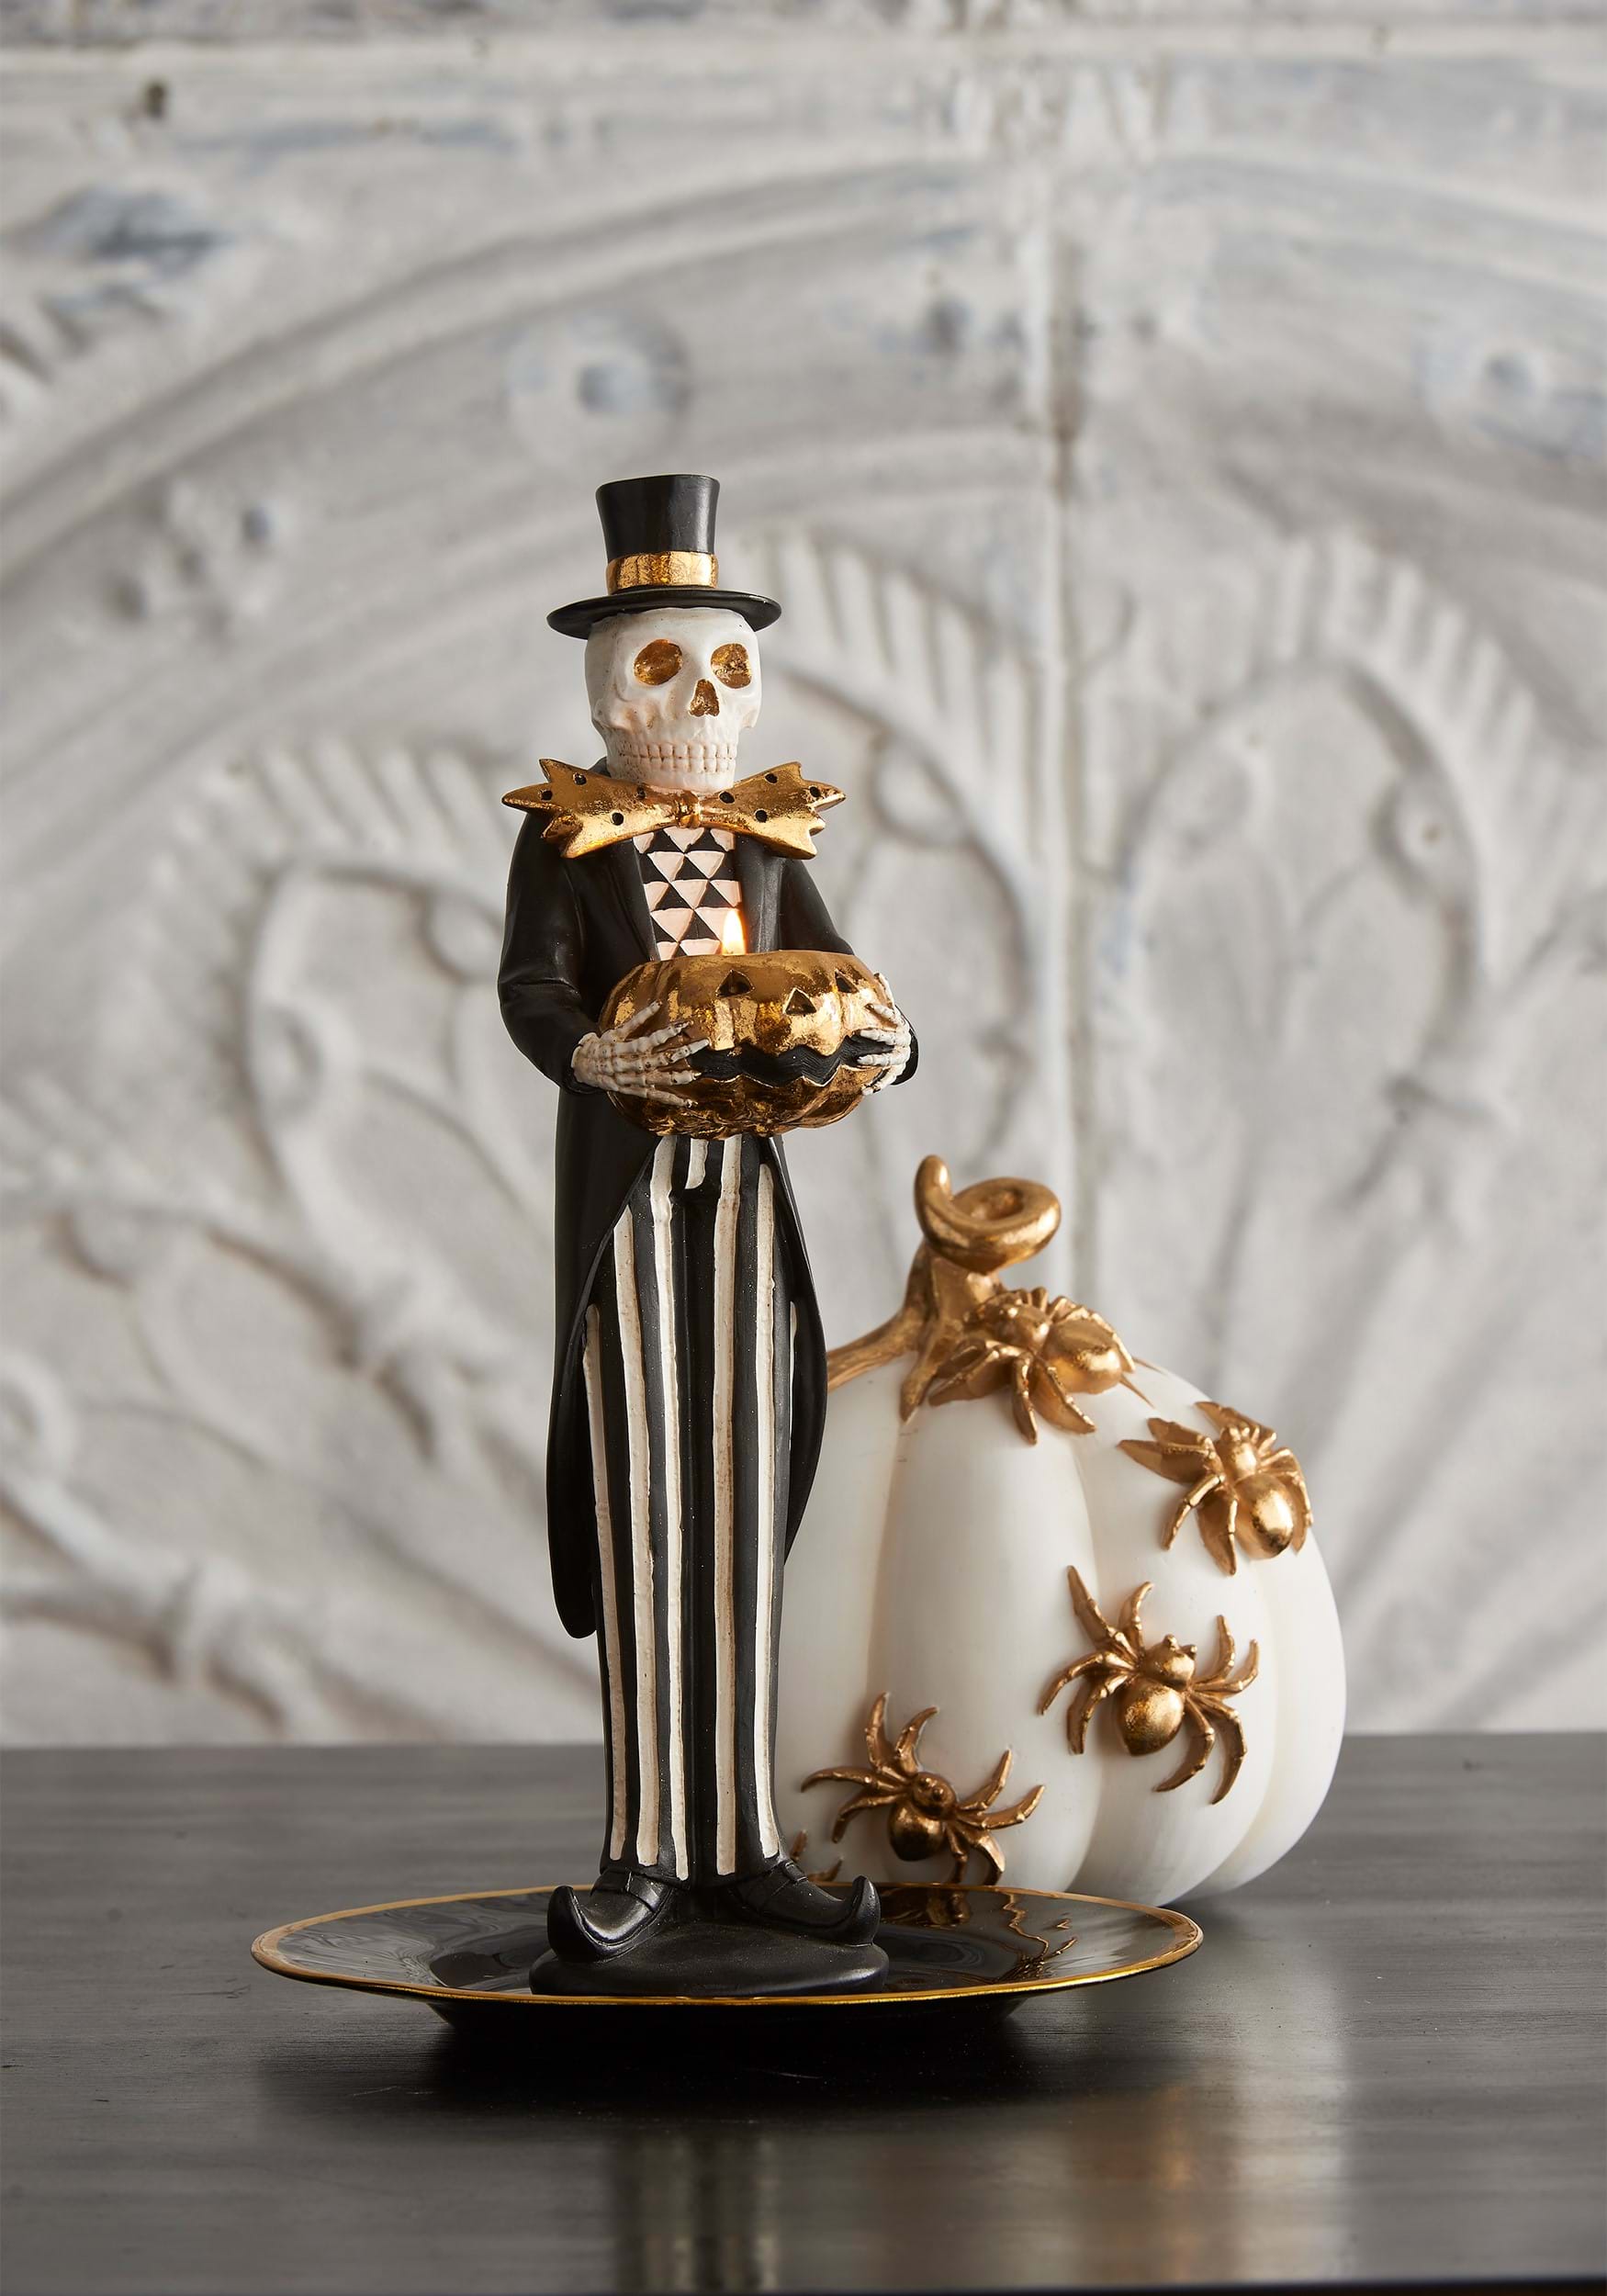 13 Skeleton With Candle Jack 'O Lantern Decorative Figure , Skeleton Decorations